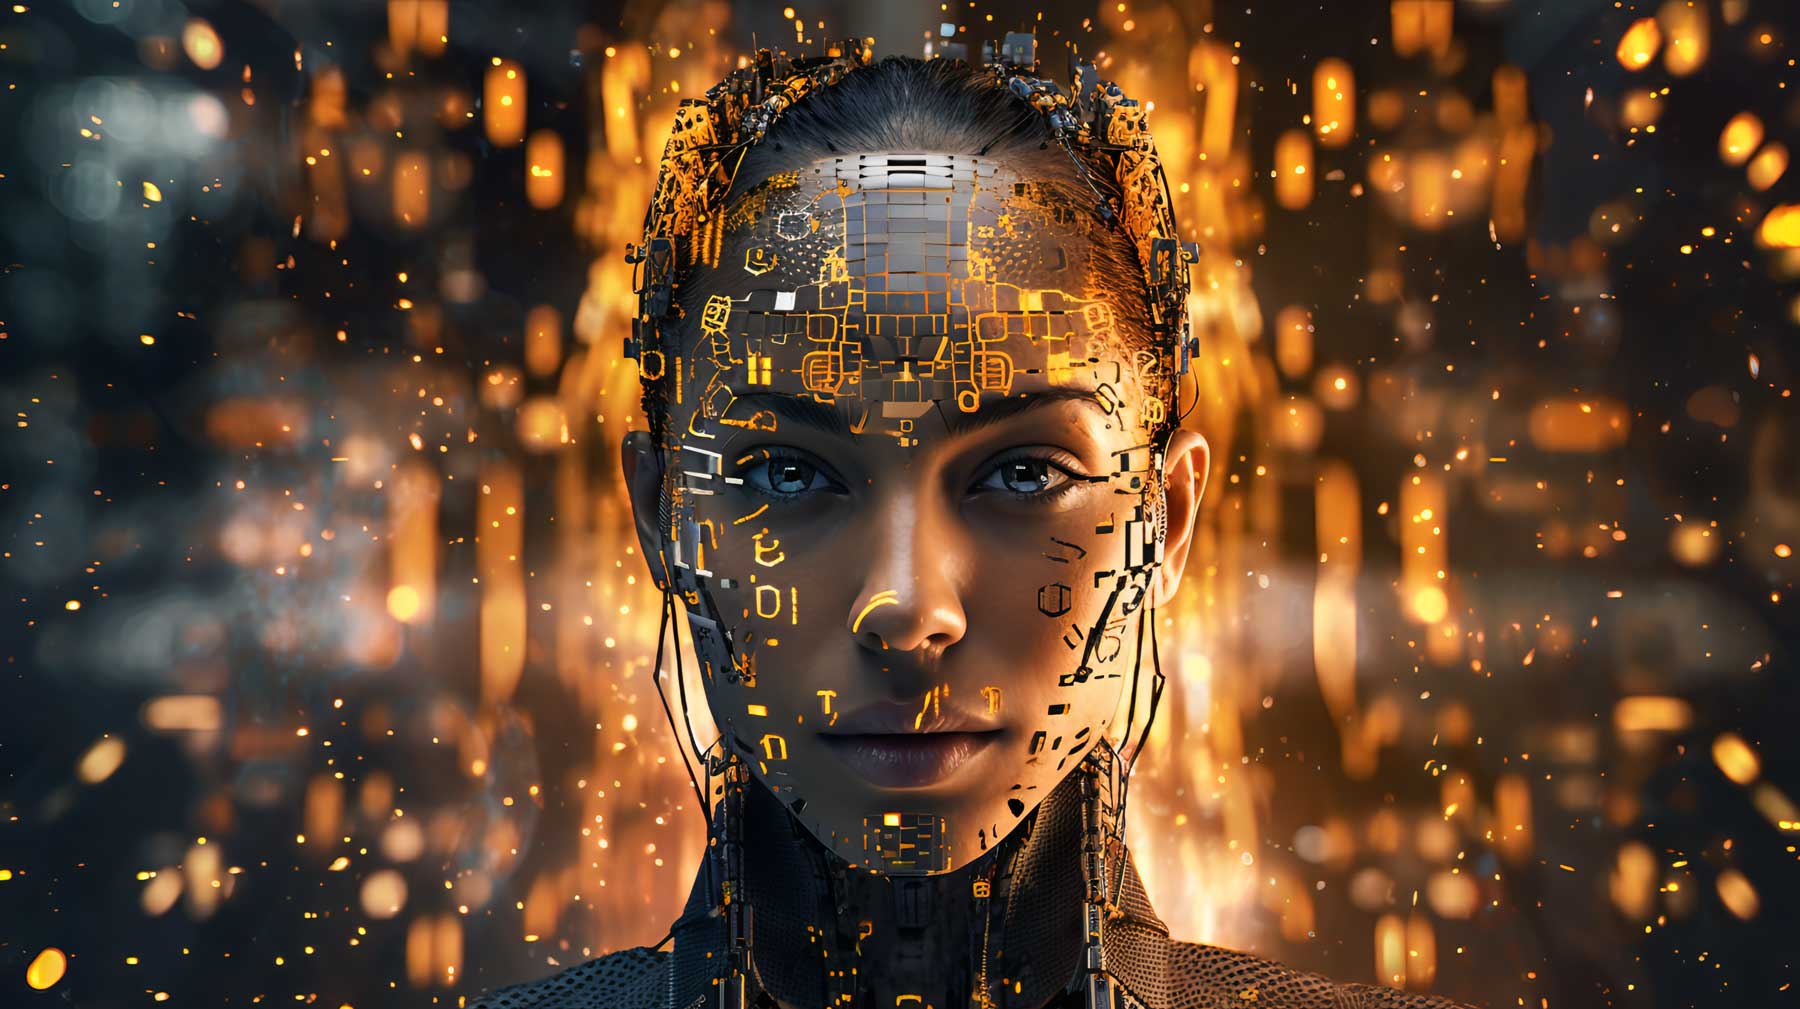 图片展示了一位女性机器人的头部特写，其面部由金色数字化图案覆盖，背景是模糊的橙色光点。